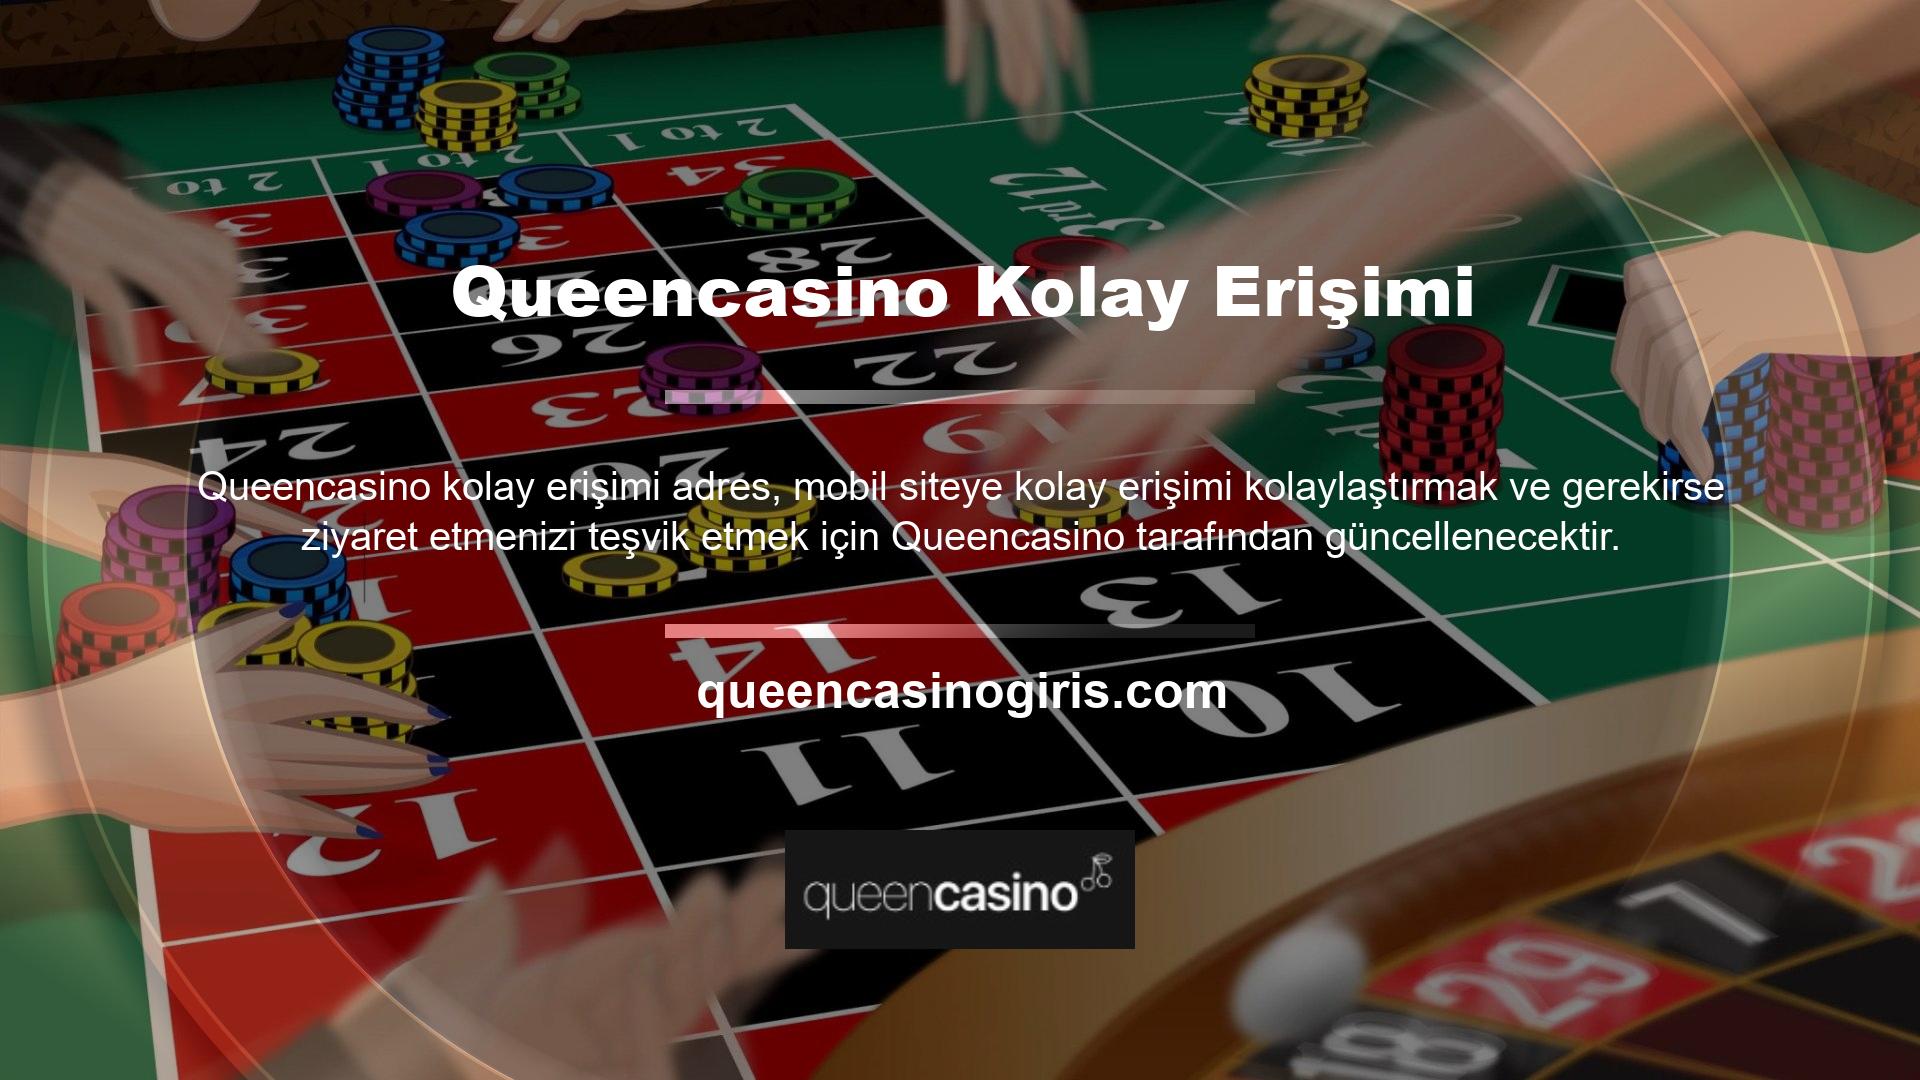 Queencasino mevcut web sitesi adresine erişmek için bu sayfadaki 'Giriş Yap' düğmesine tıklayın